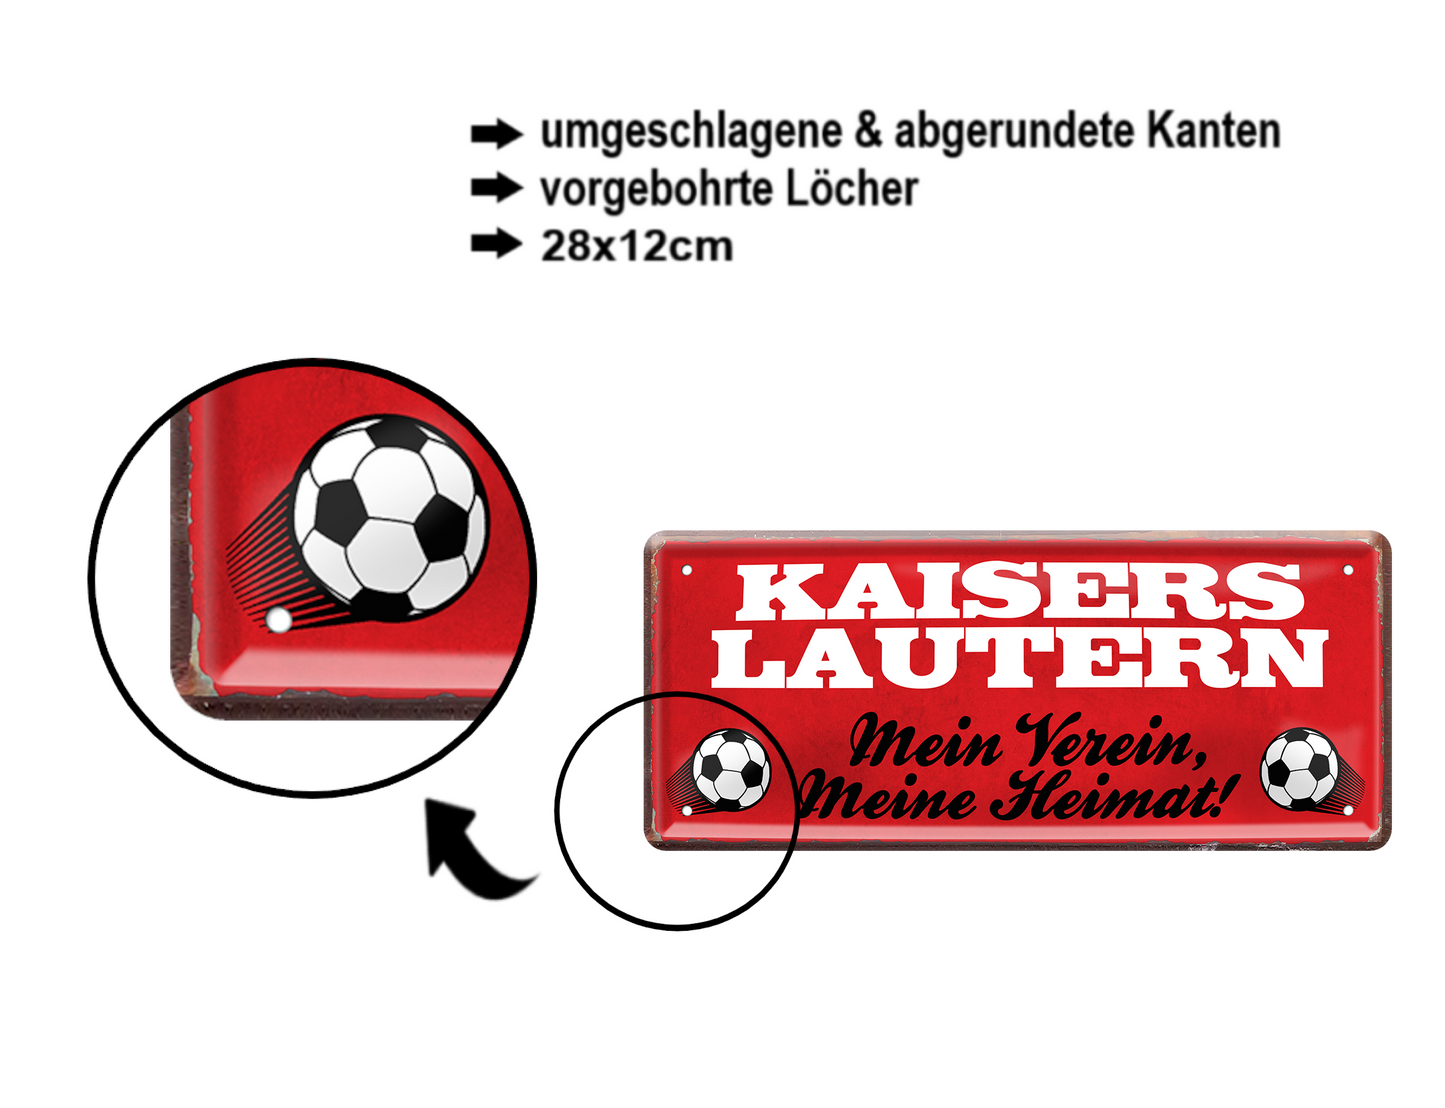 Blechschild ''Kaiserslautern Mein Verein, meine Heimat'' 28x12cm